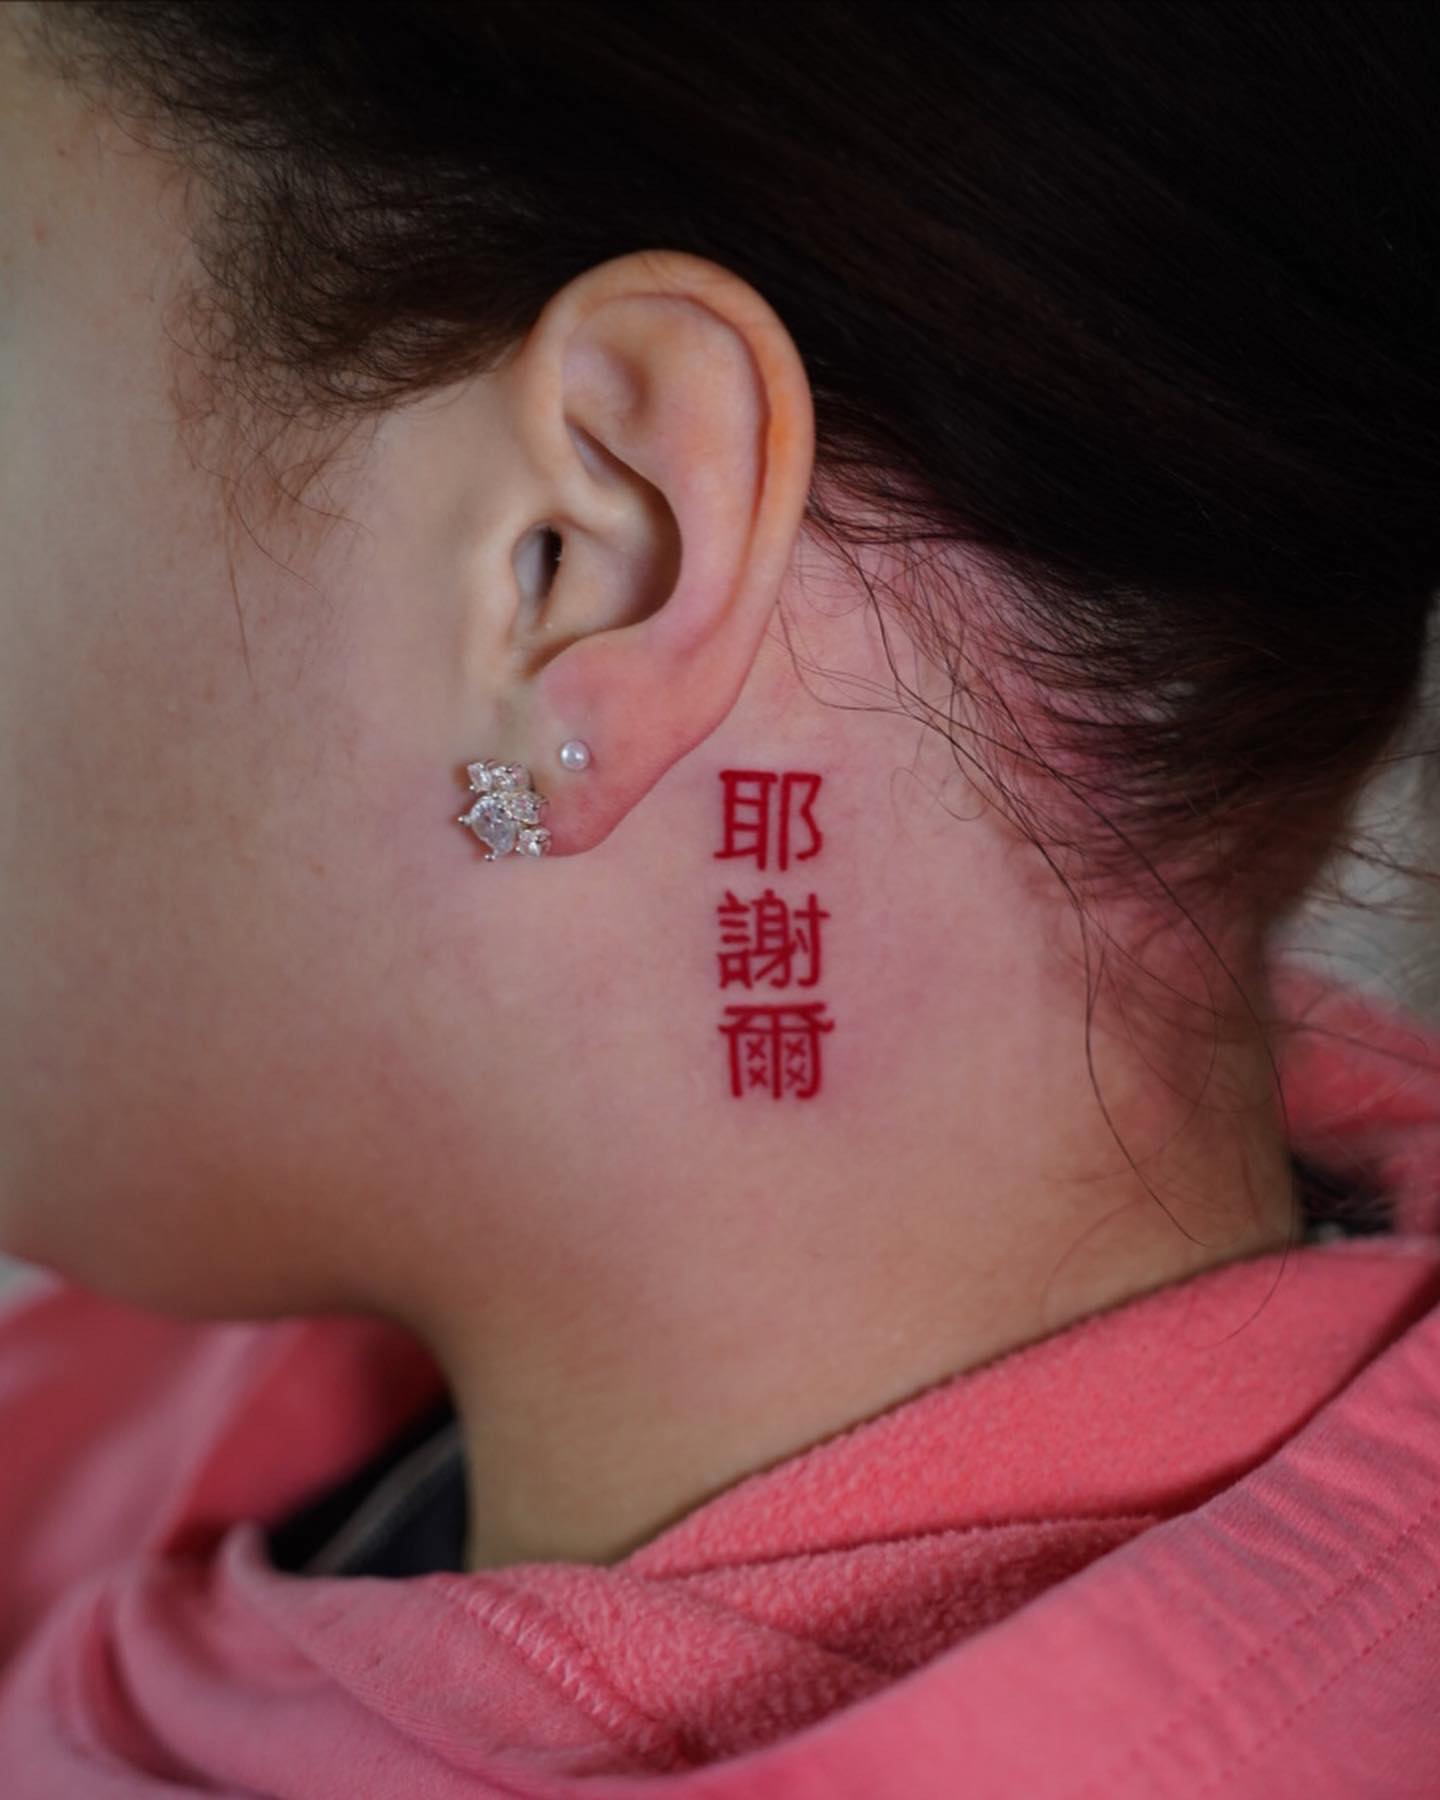 Tatuaje detrás de la oreja con letra china.